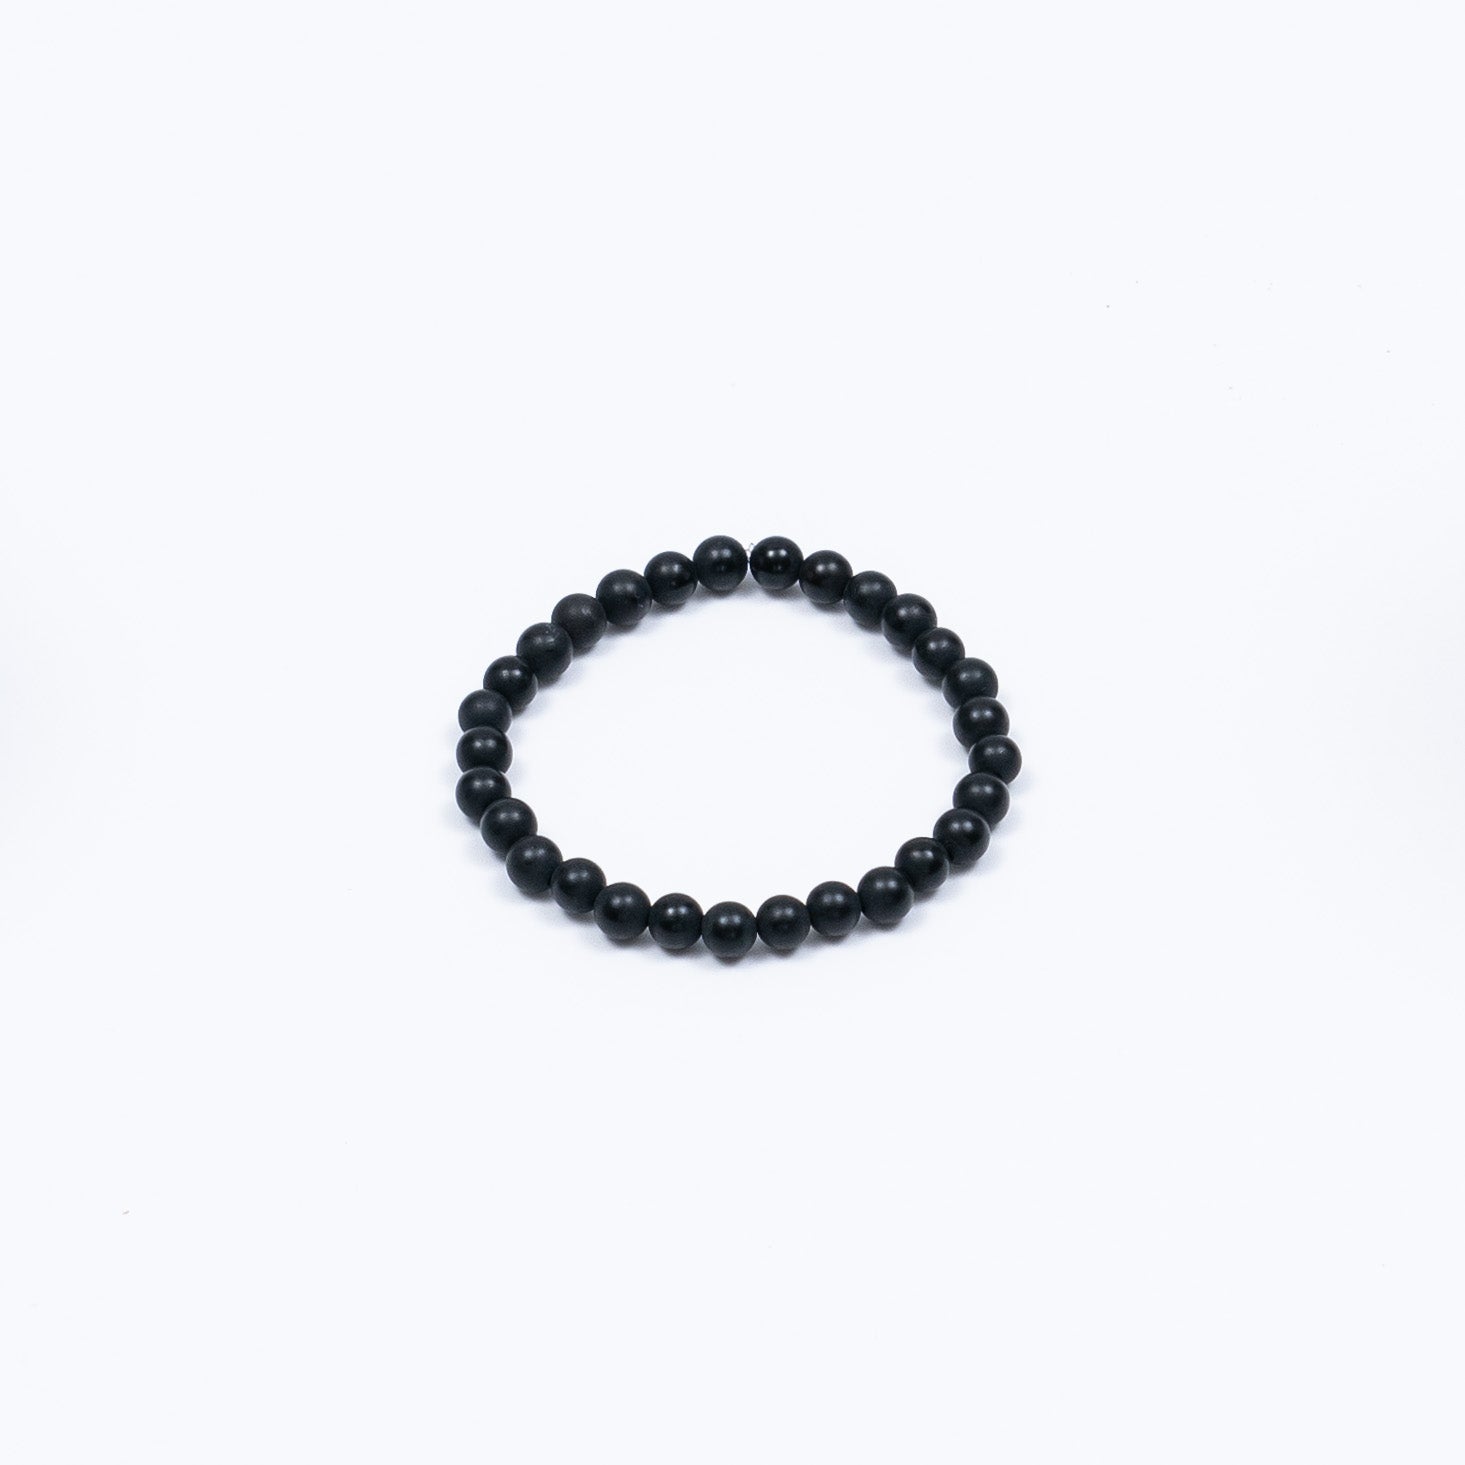 Black Agate Beaded Bracelet